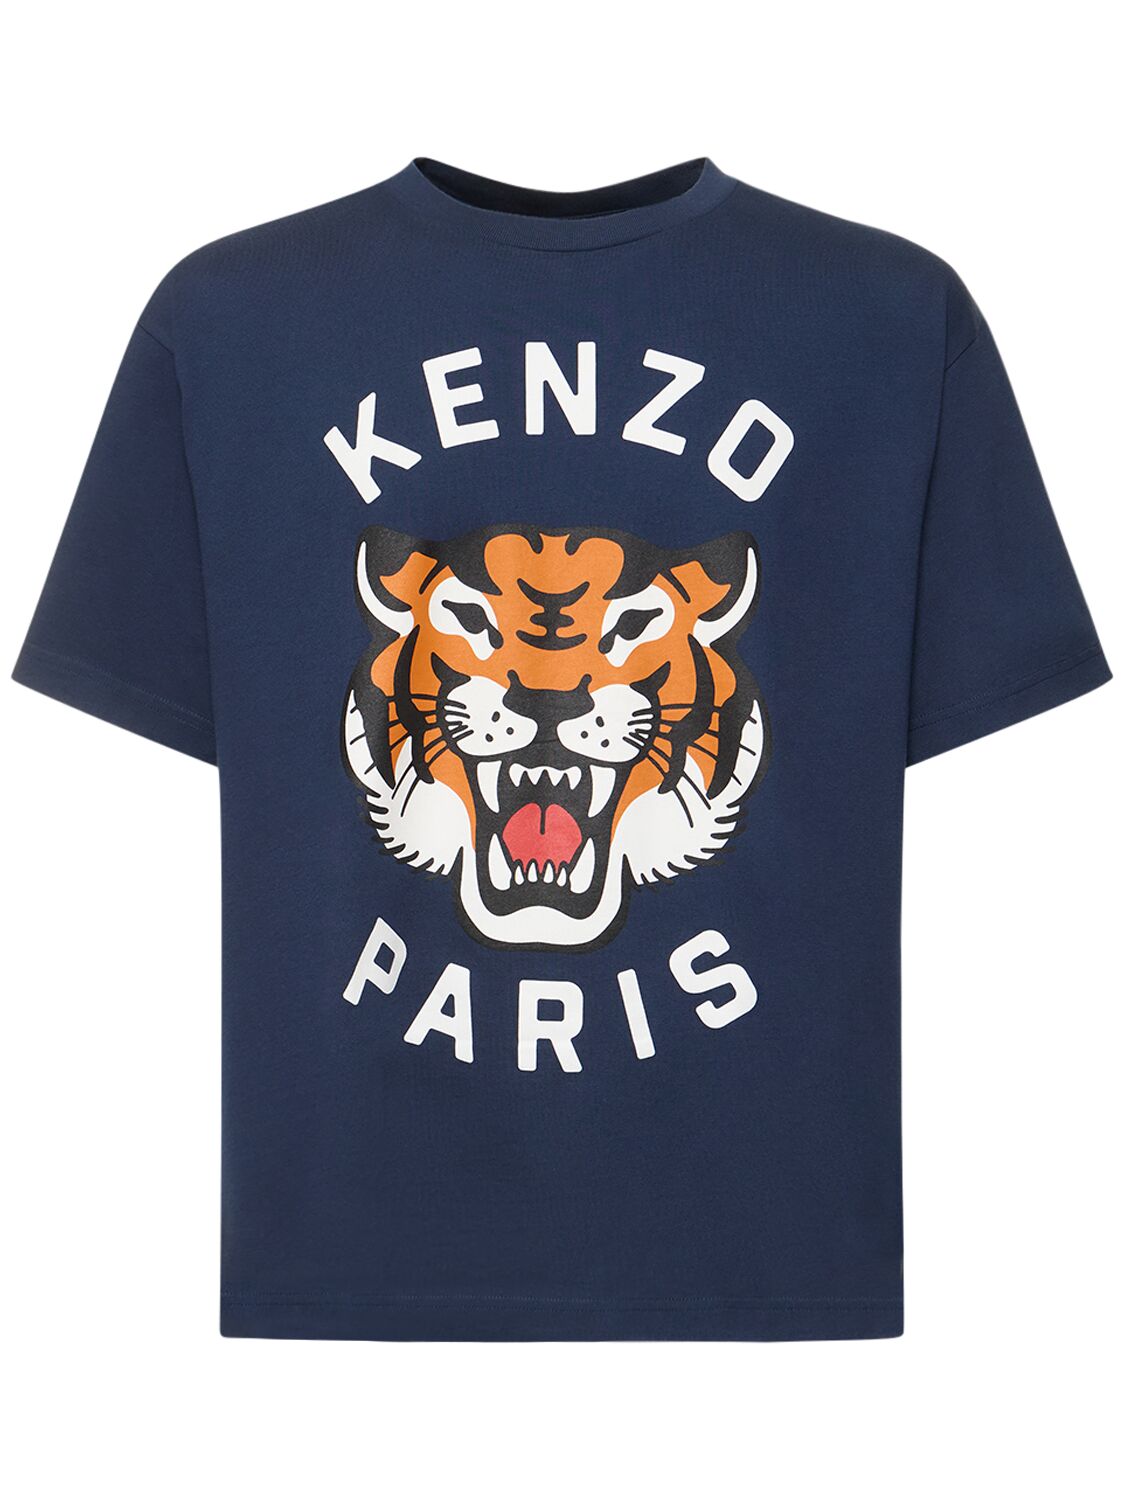 T-shirt In Jersey Di Cotone Con Stampa - KENZO PARIS - Modalova